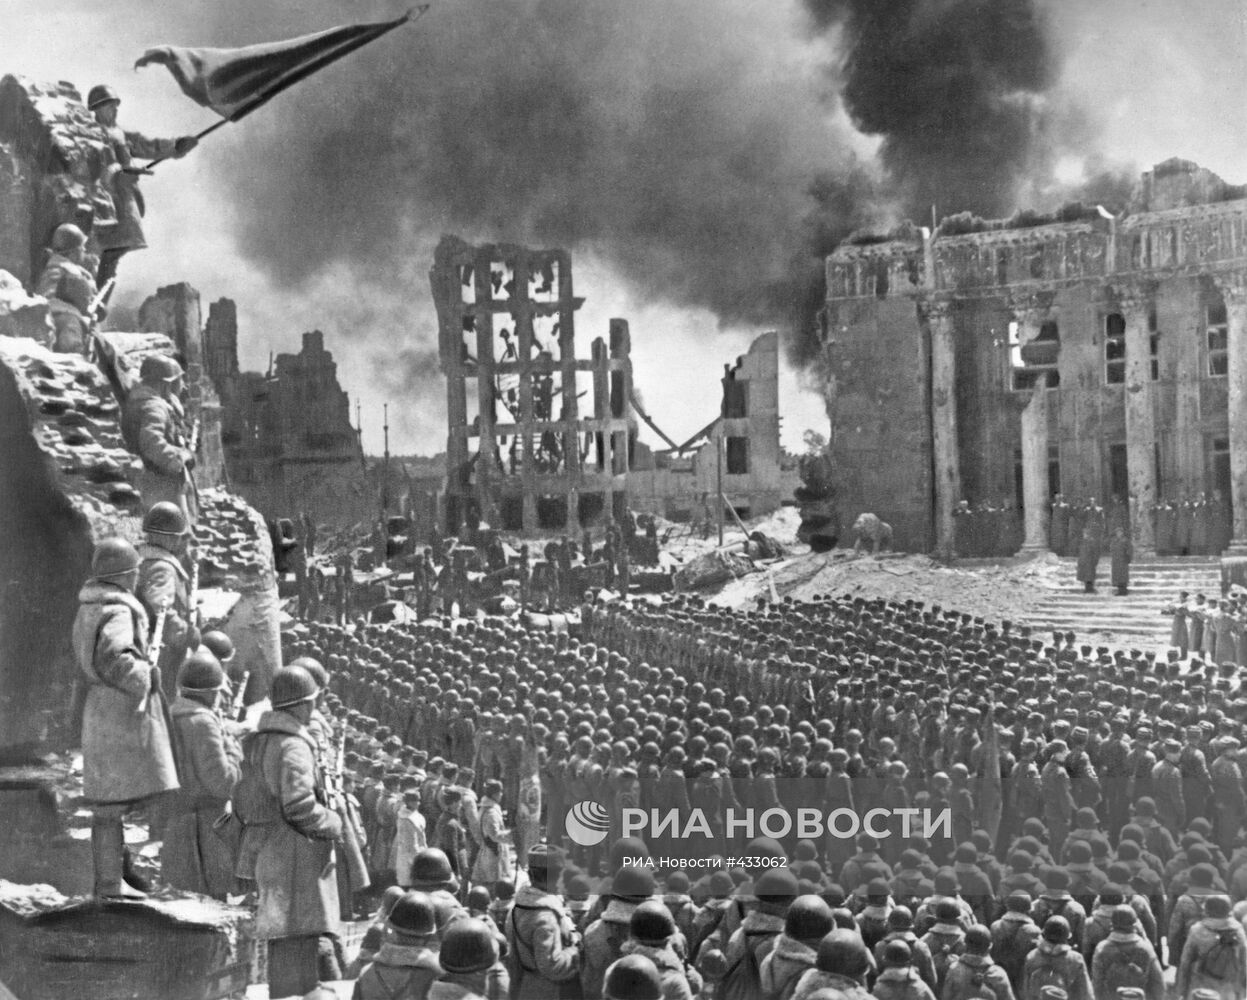 Кадр из кинофильма "Сталинградская битва"